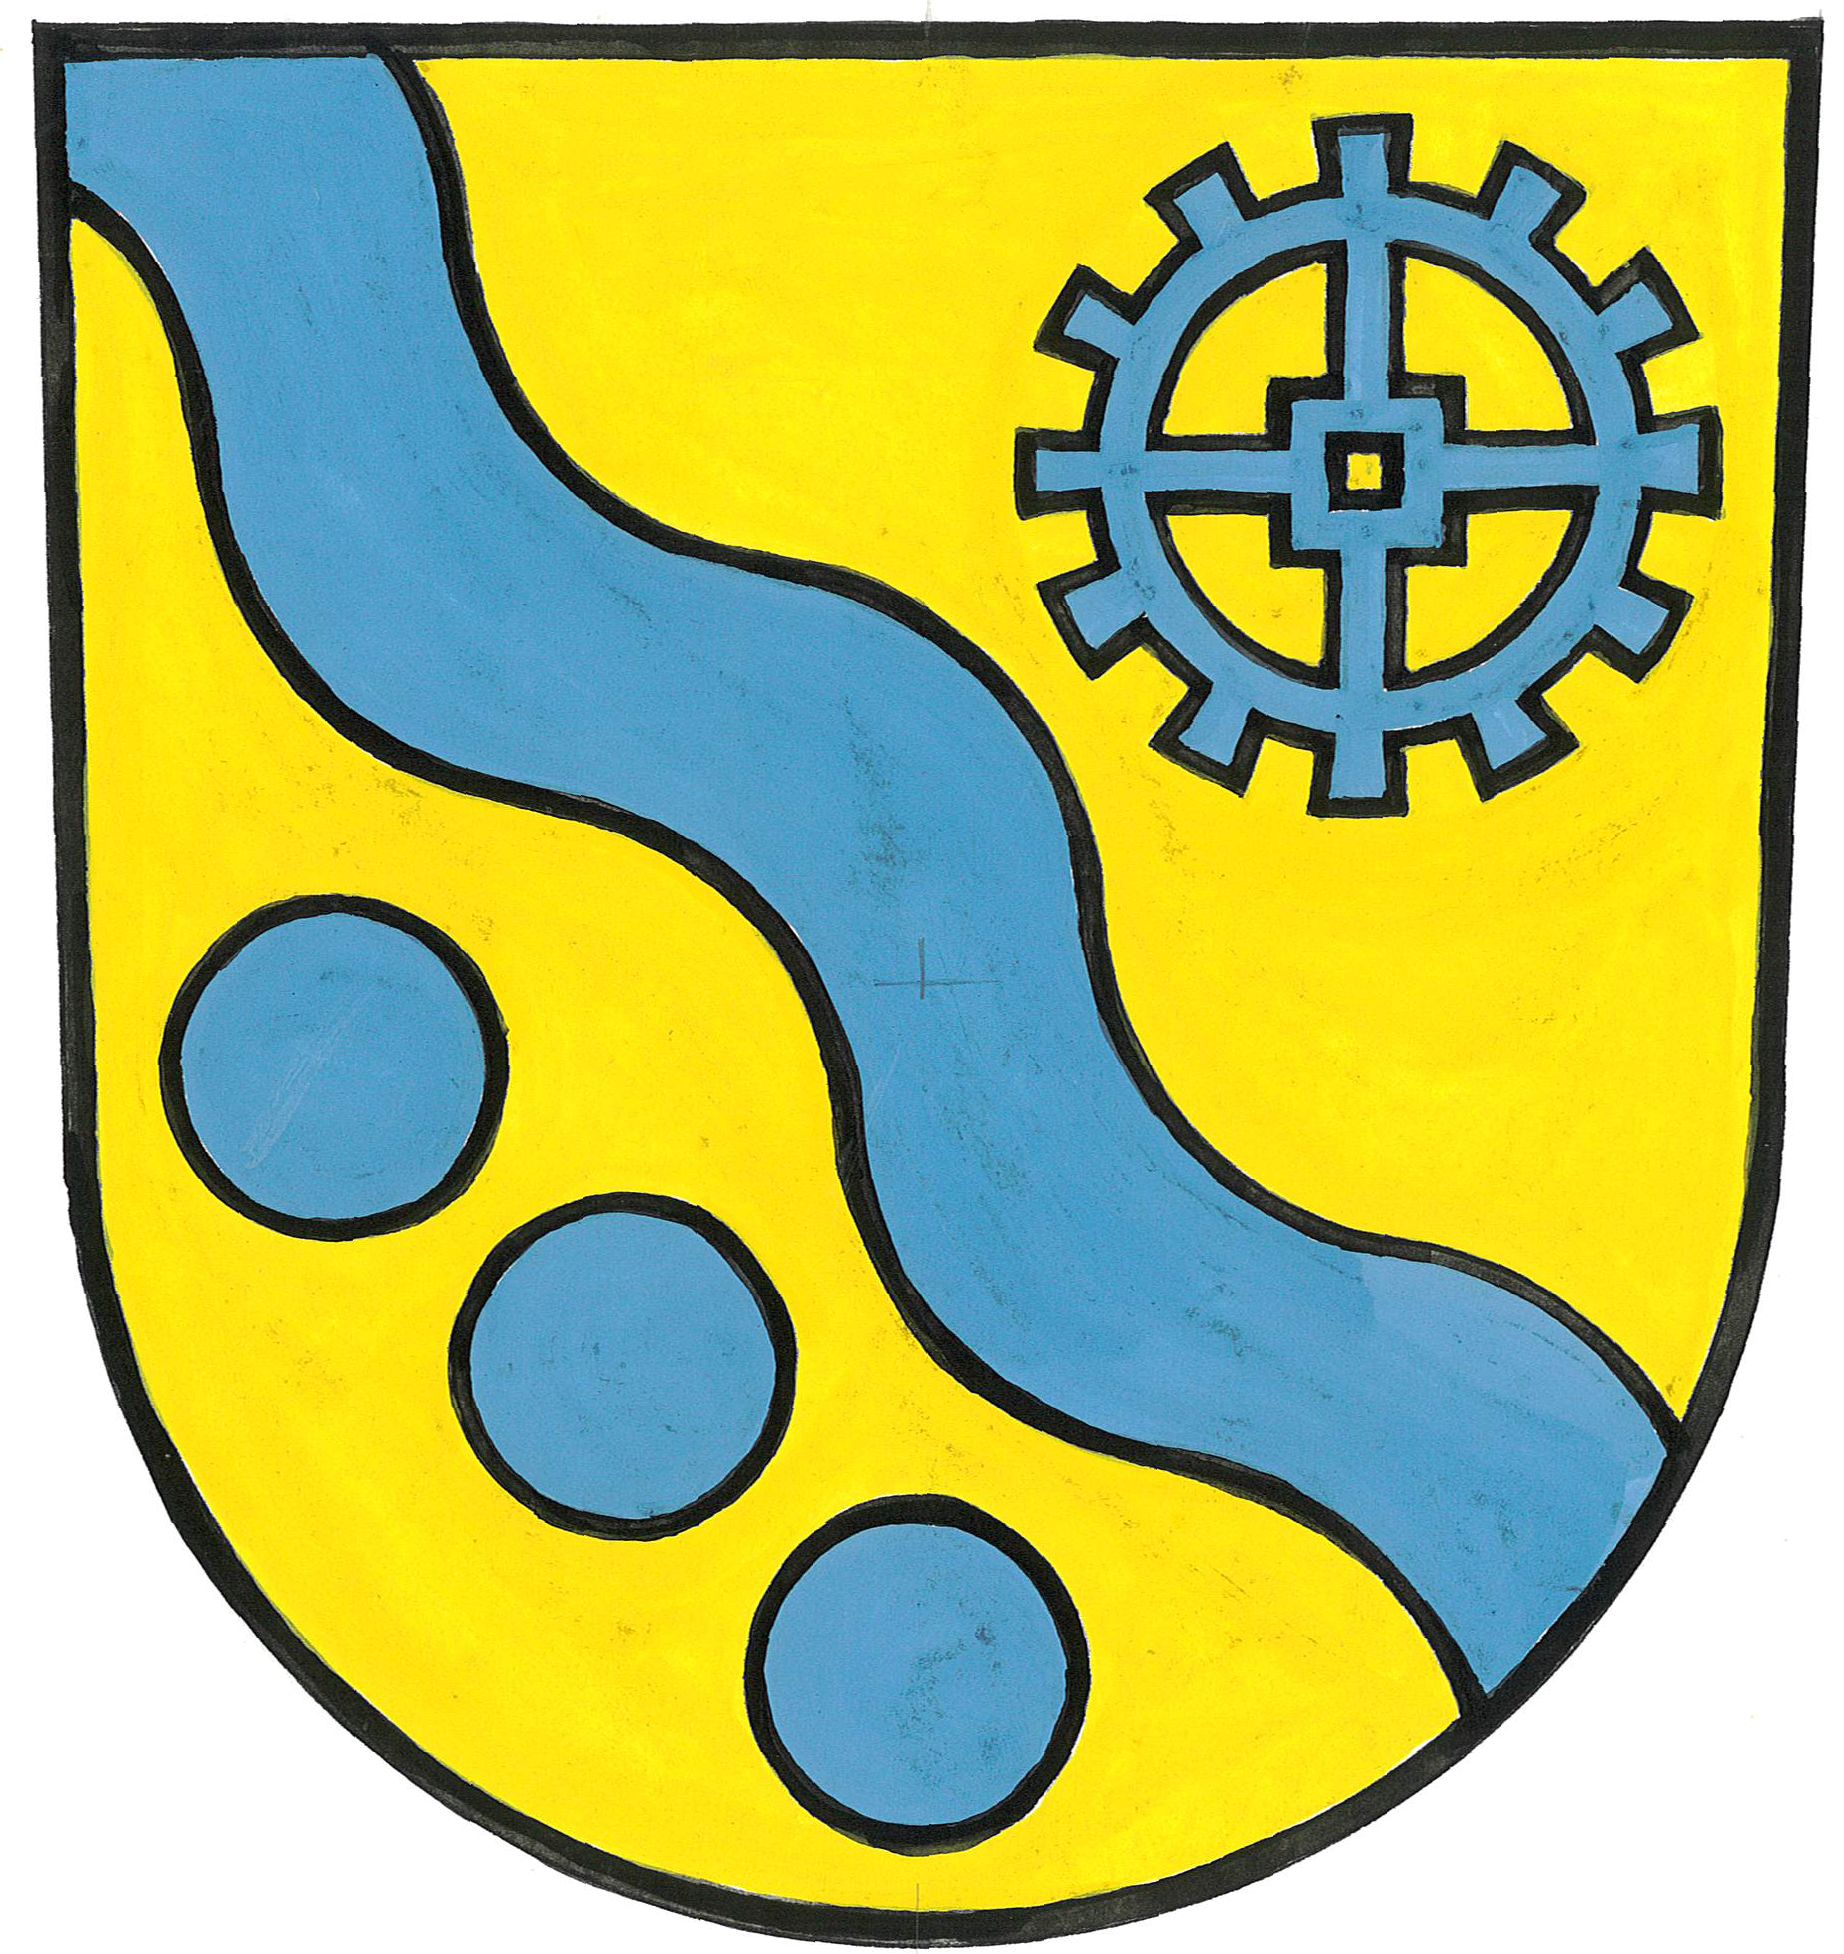 Wappen Miellen